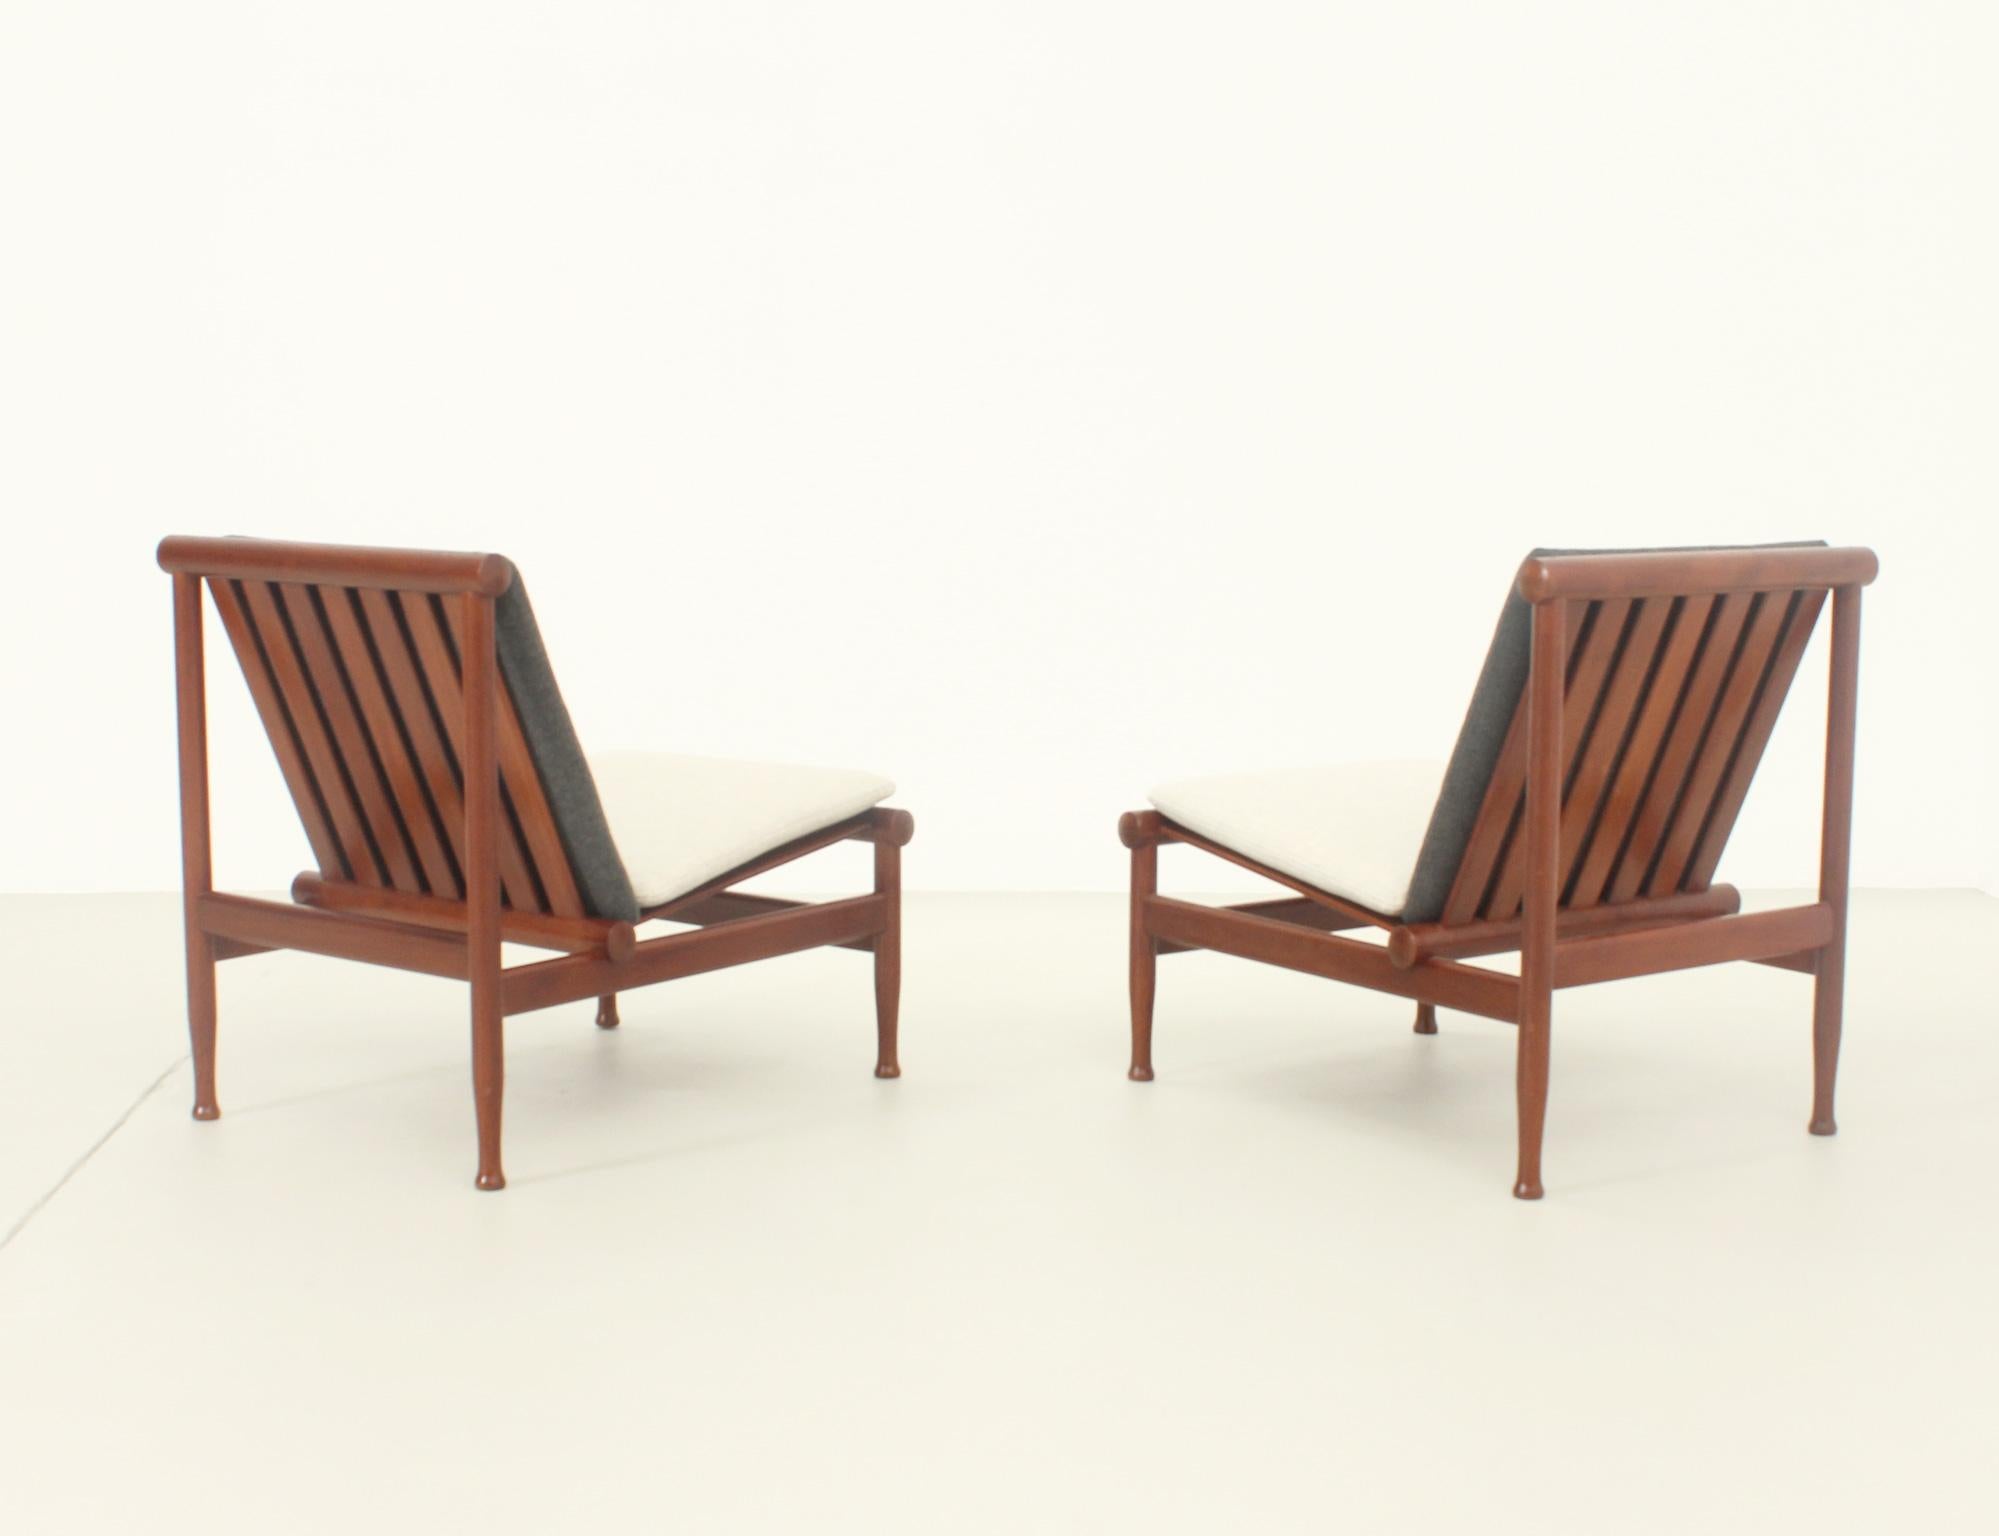 Japan Easy Chairs by Kai Lyngfeldt Larsen for Søborg, Denmark, 1950's For Sale 5